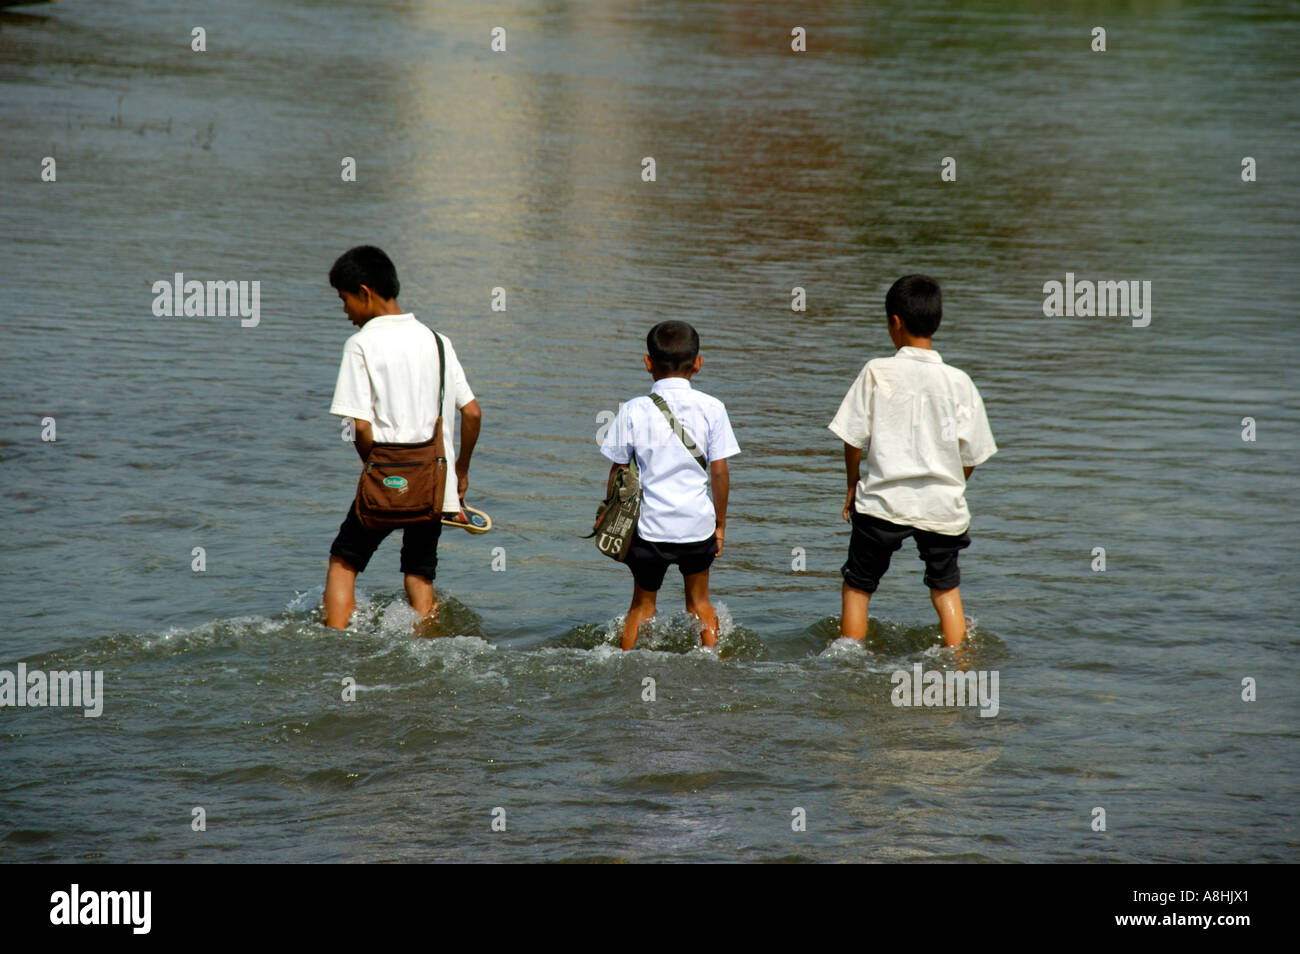 Three boys wade through water Vang Vieng Laos Stock Photo